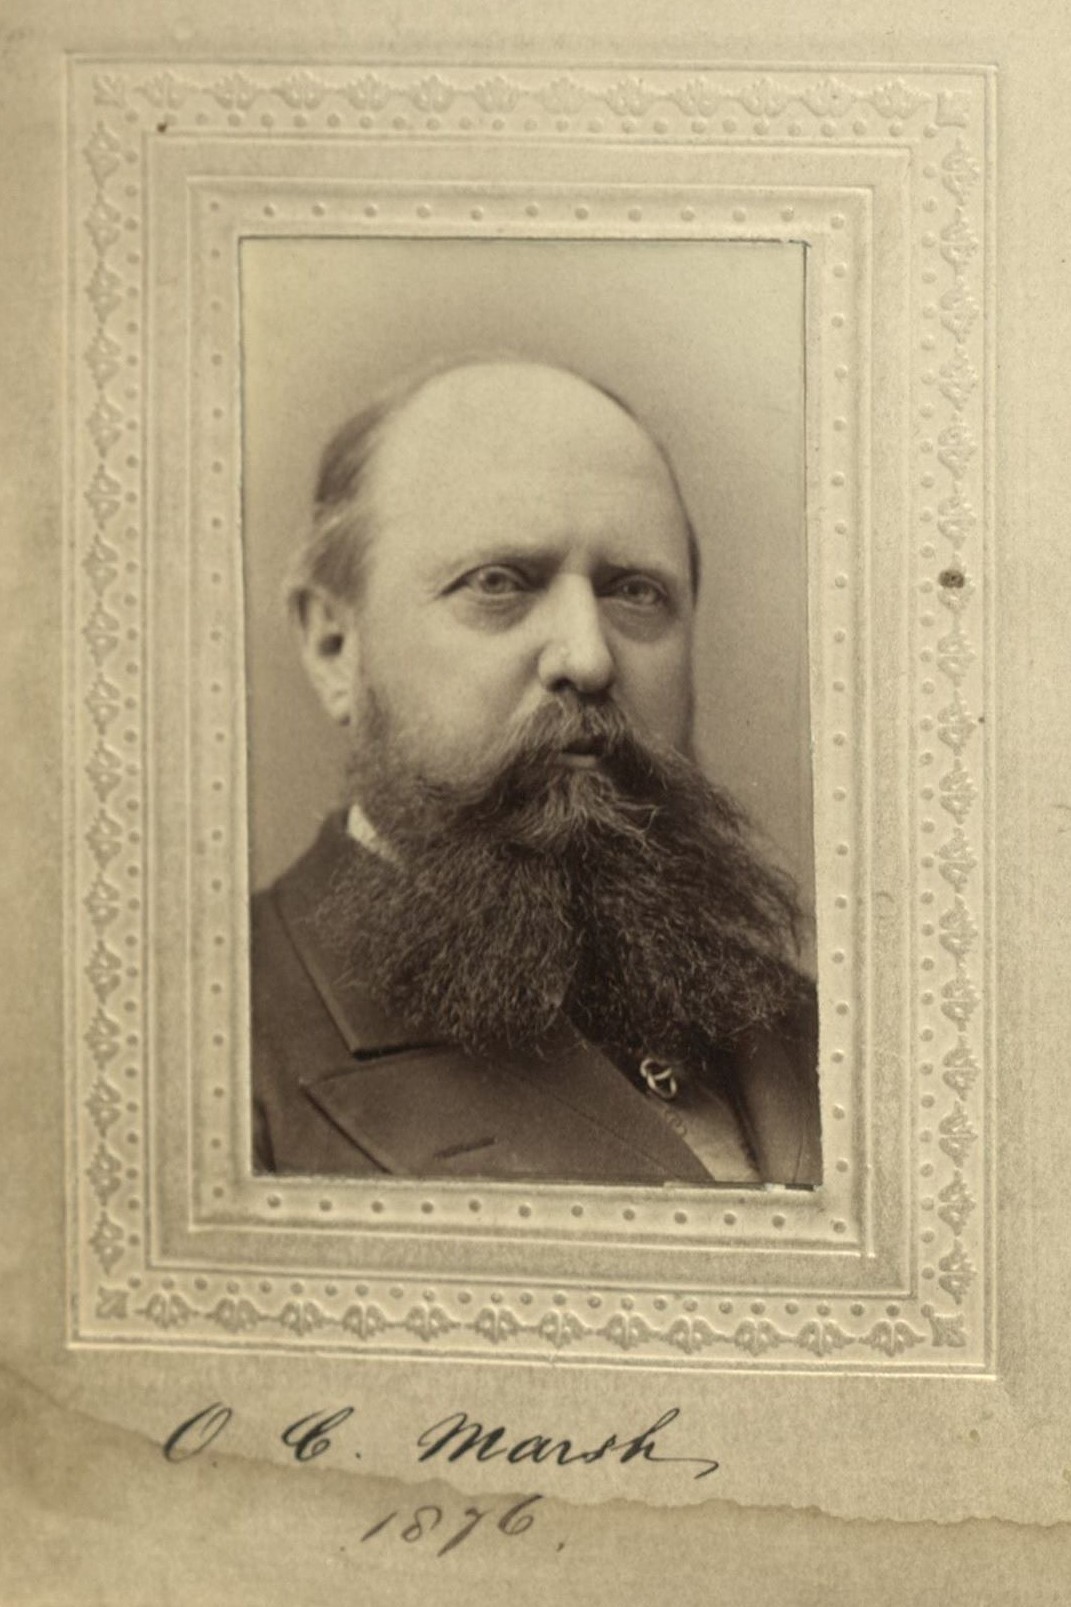 Member portrait of Othniel C. Marsh